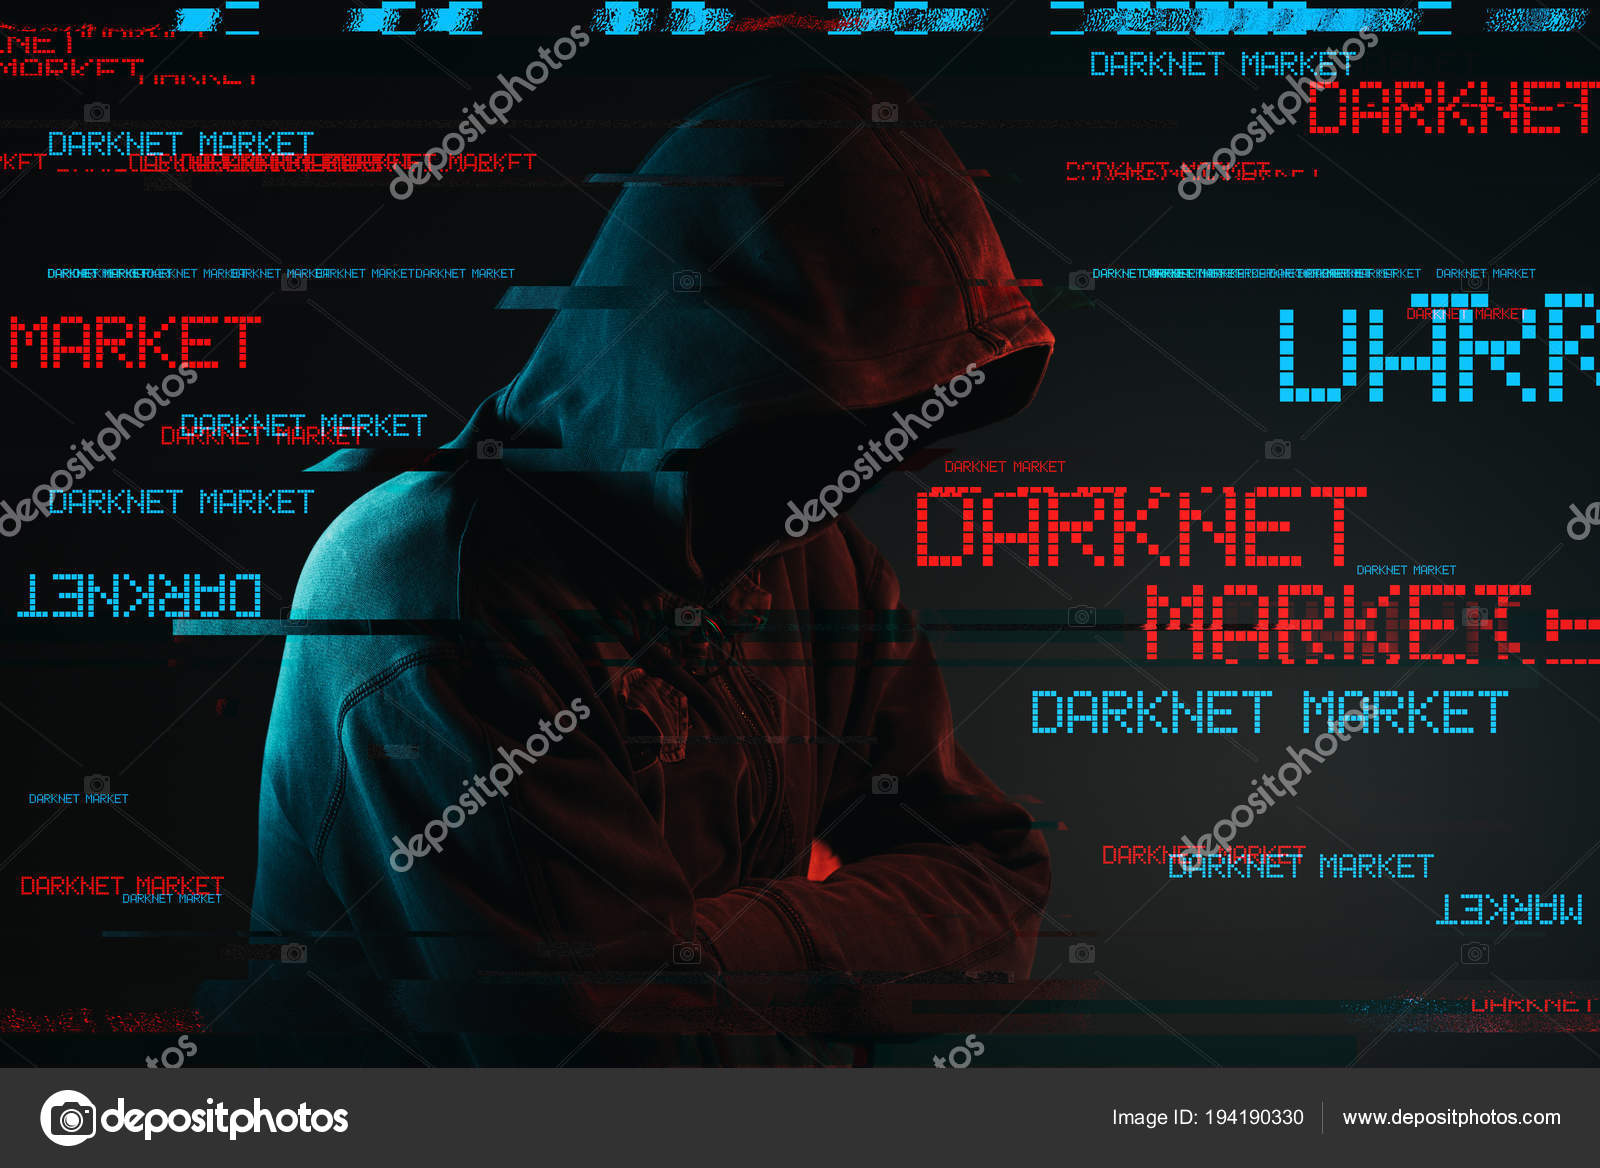 Most Popular Darknet Market